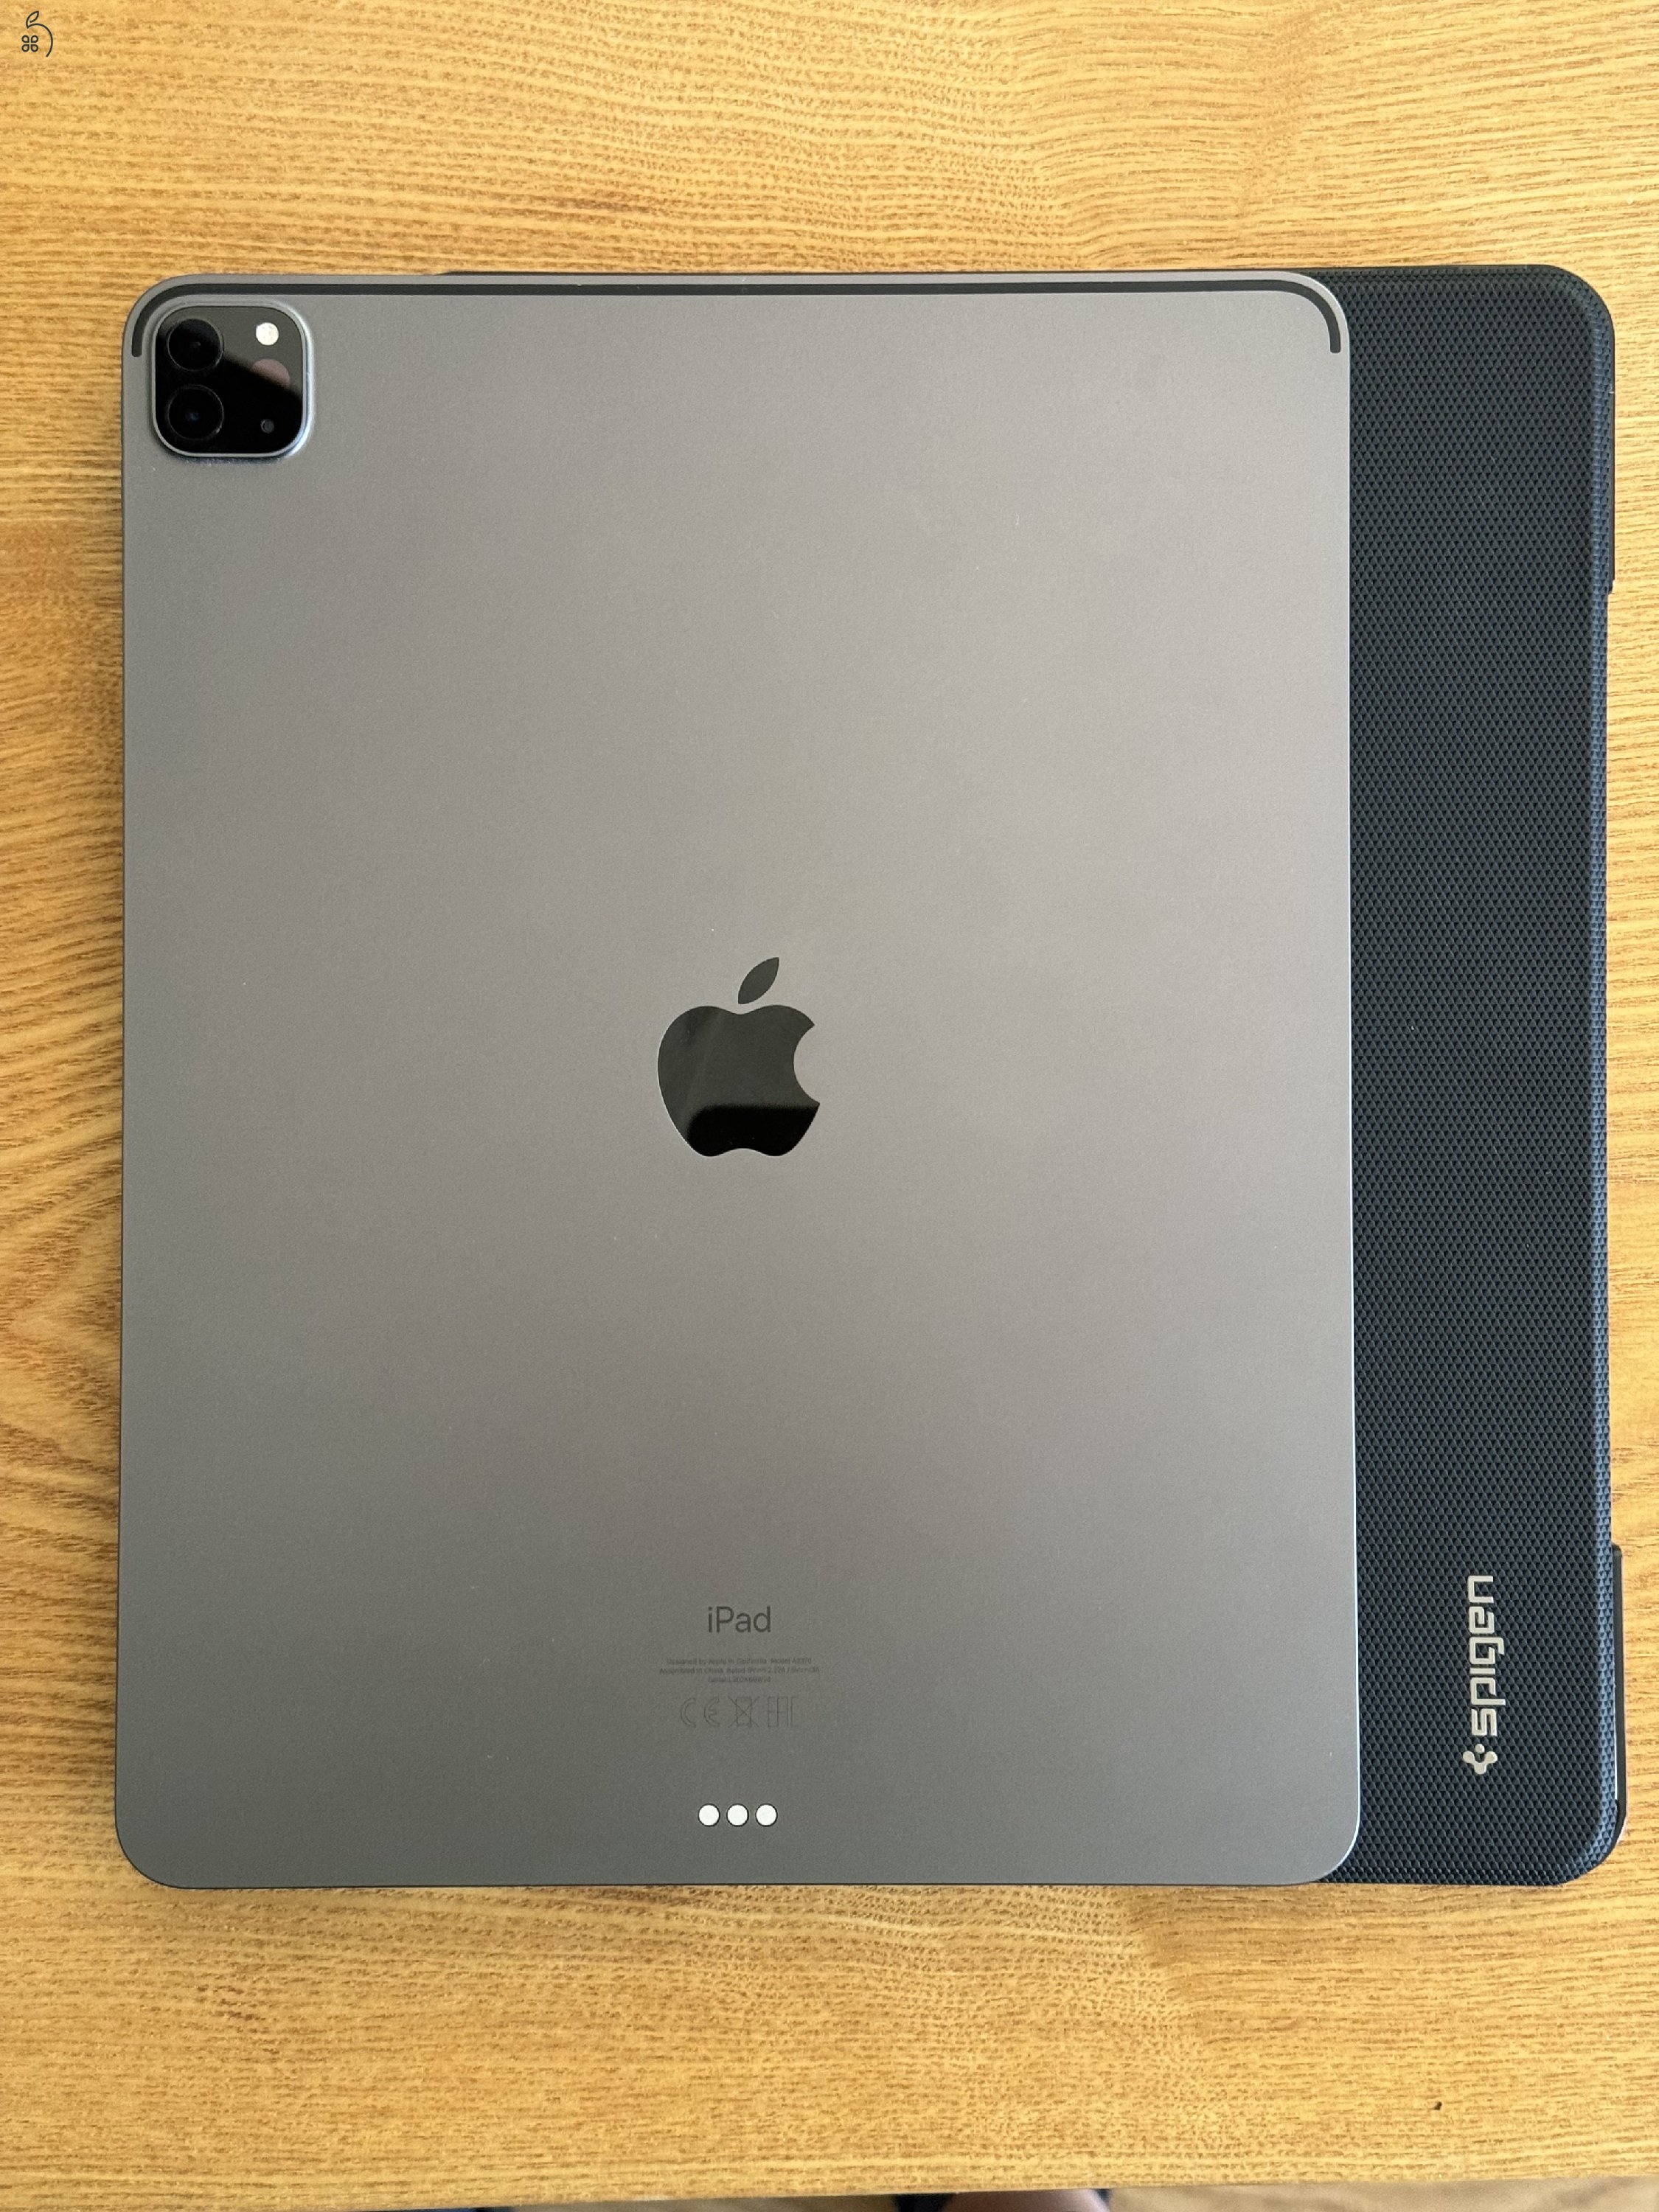 M1 iPad Pro 12.9 Wi-Fi 128GB Space Gray + Apple Pencil + Spigen tok